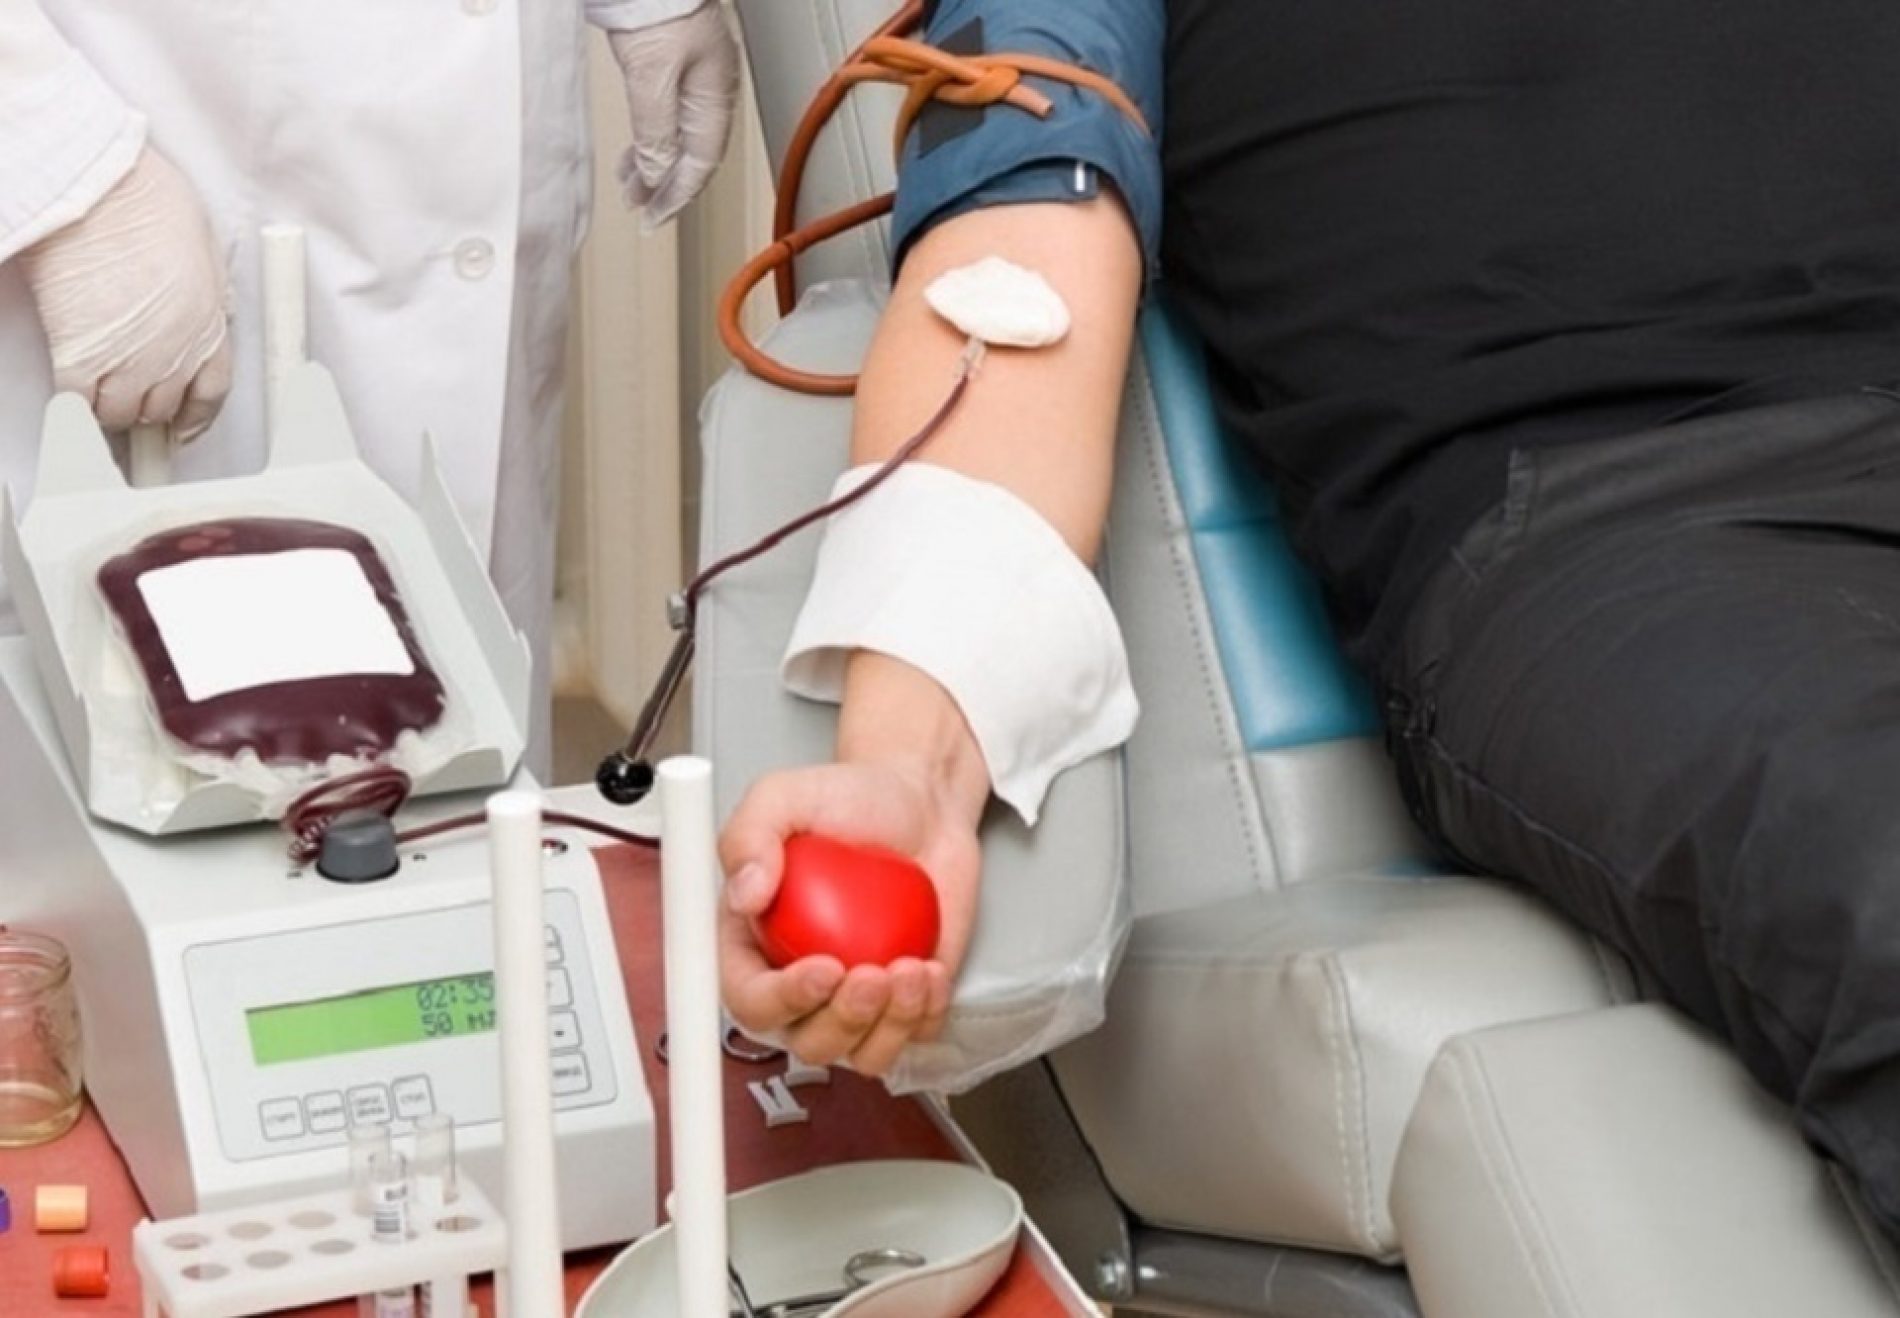 Campanha regional de doação de sangue: Veja como participar